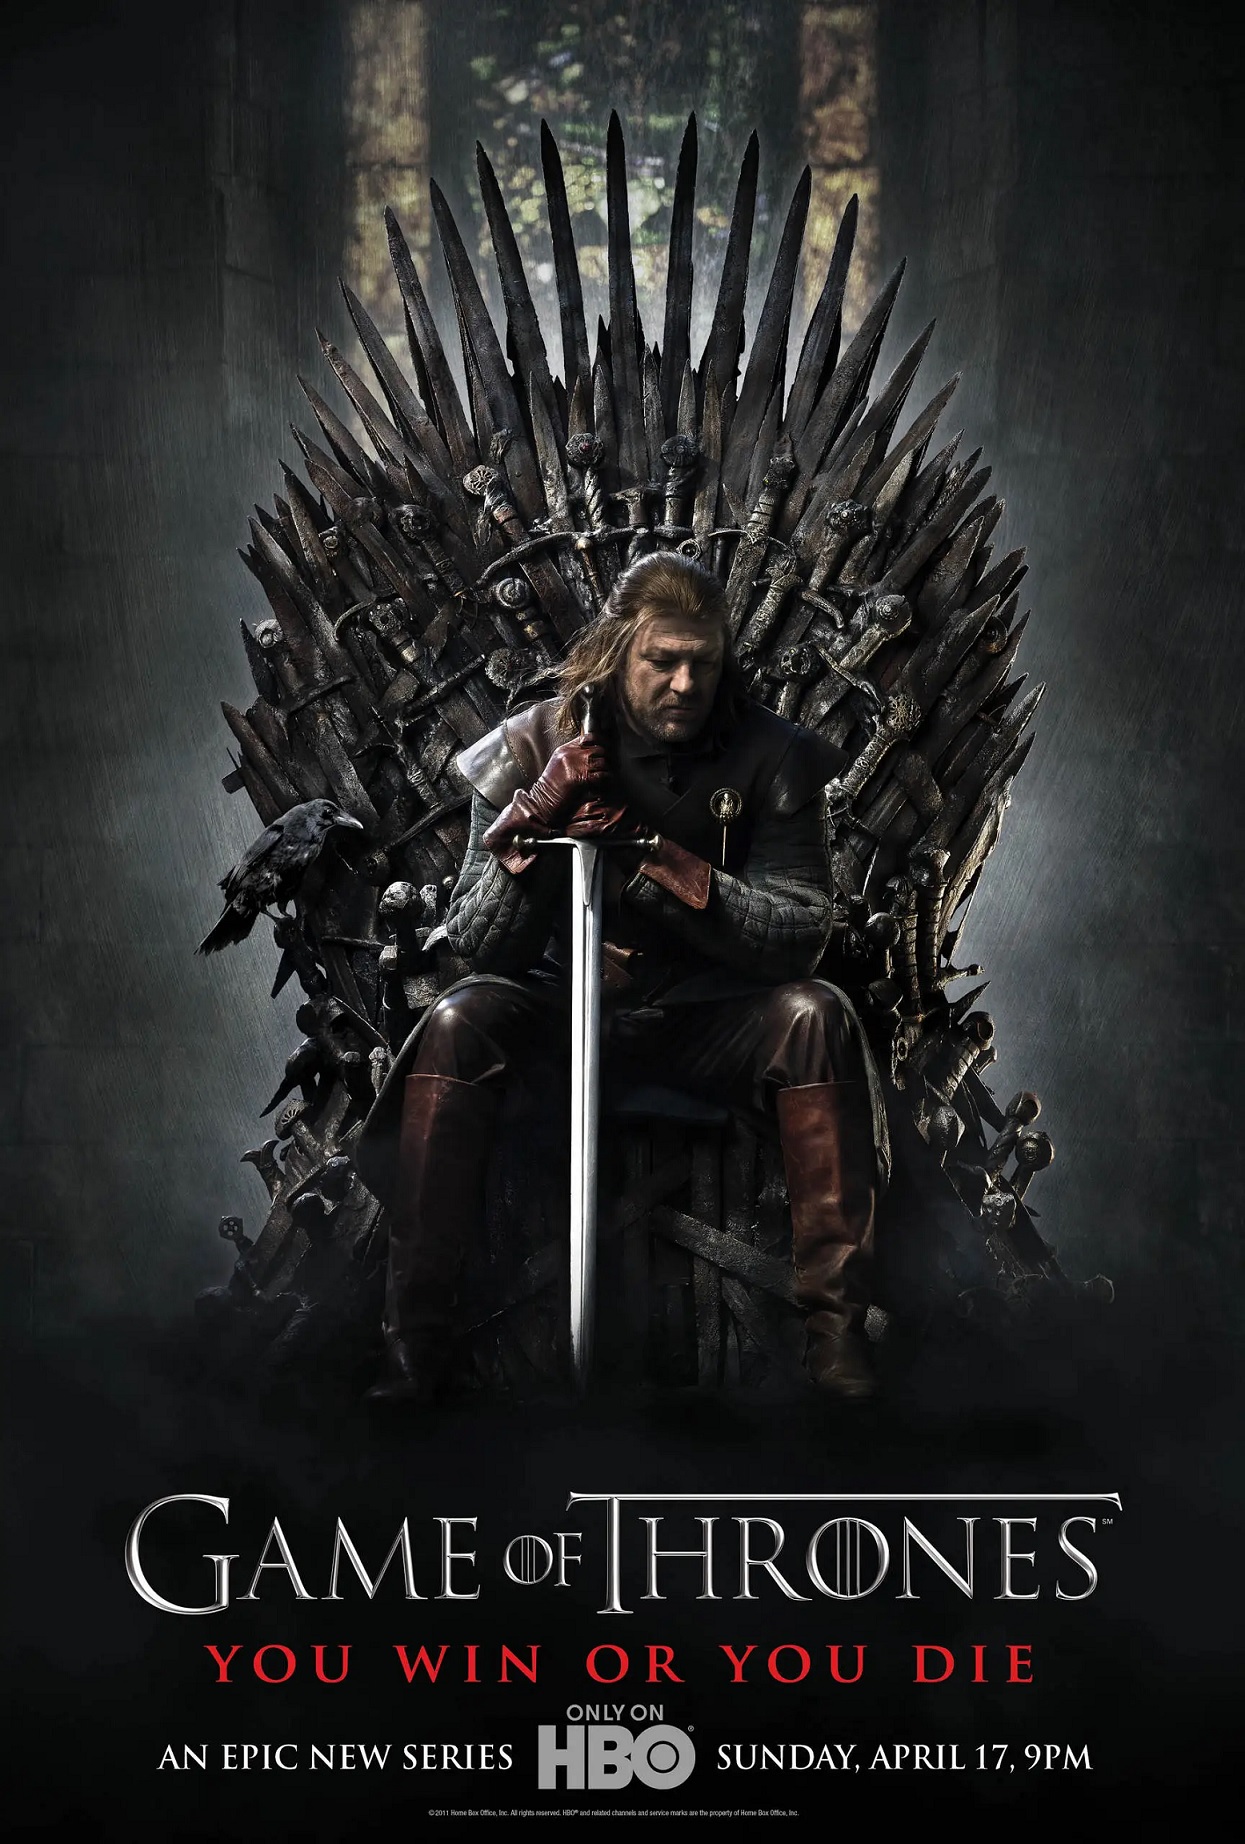 Pôster da primeira temporada de Game of Thrones dava um “spoiler” do final da série